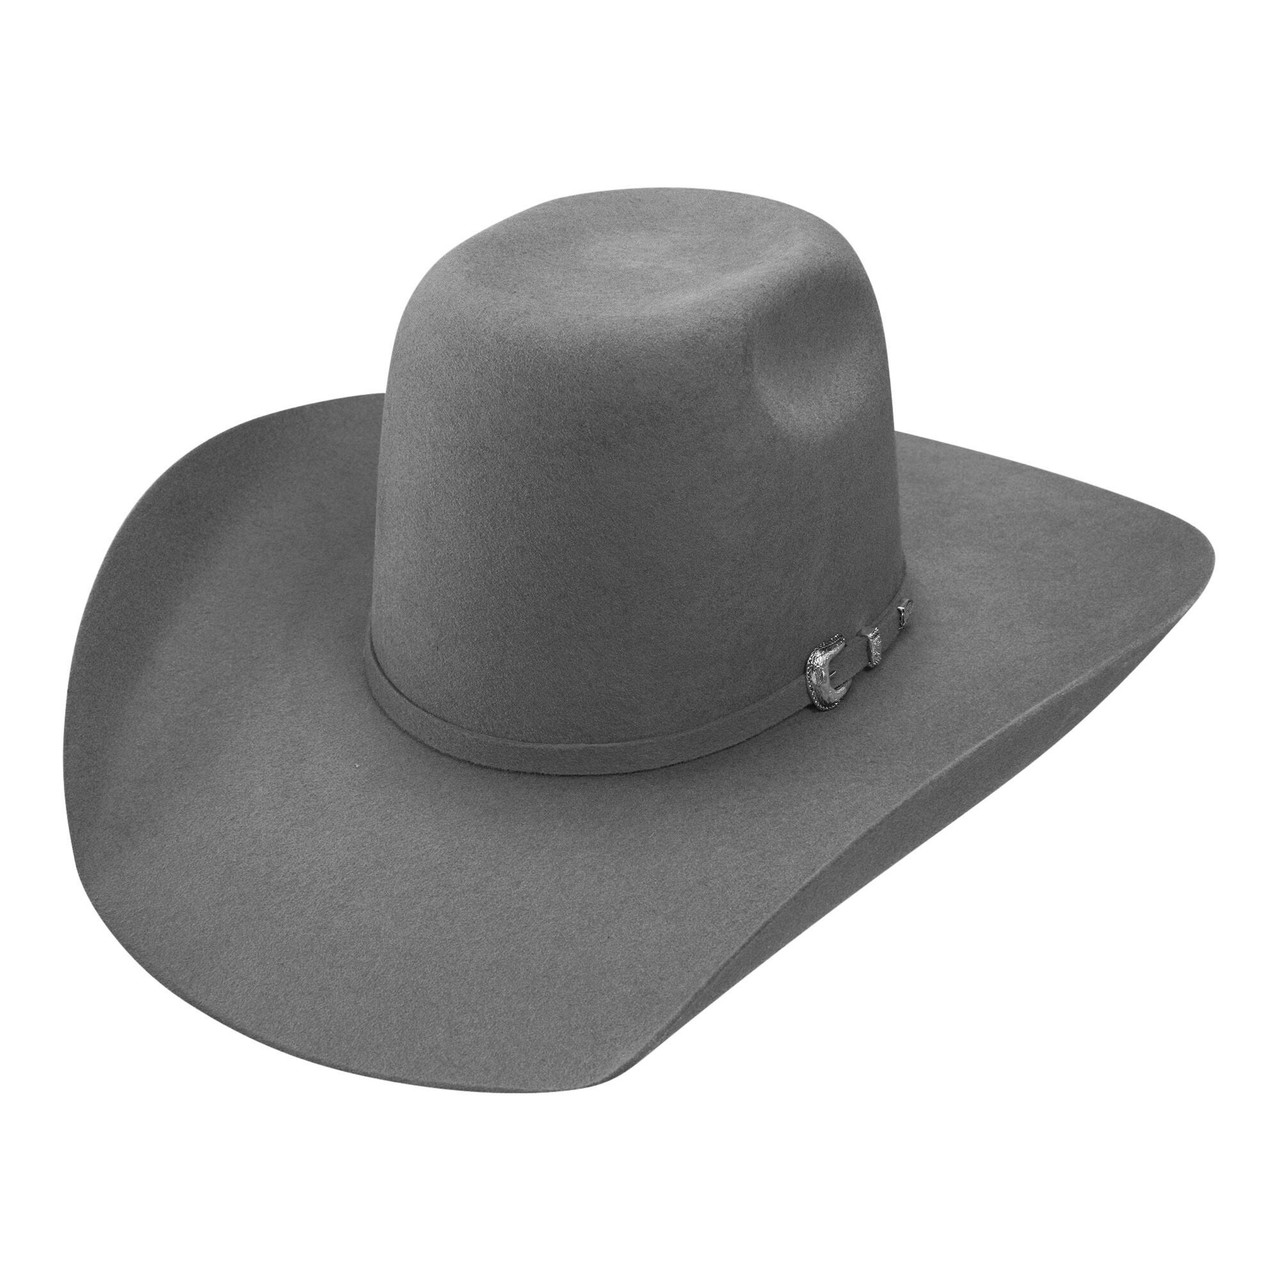 Resistol Pay Window 3X Wool Hat in grey